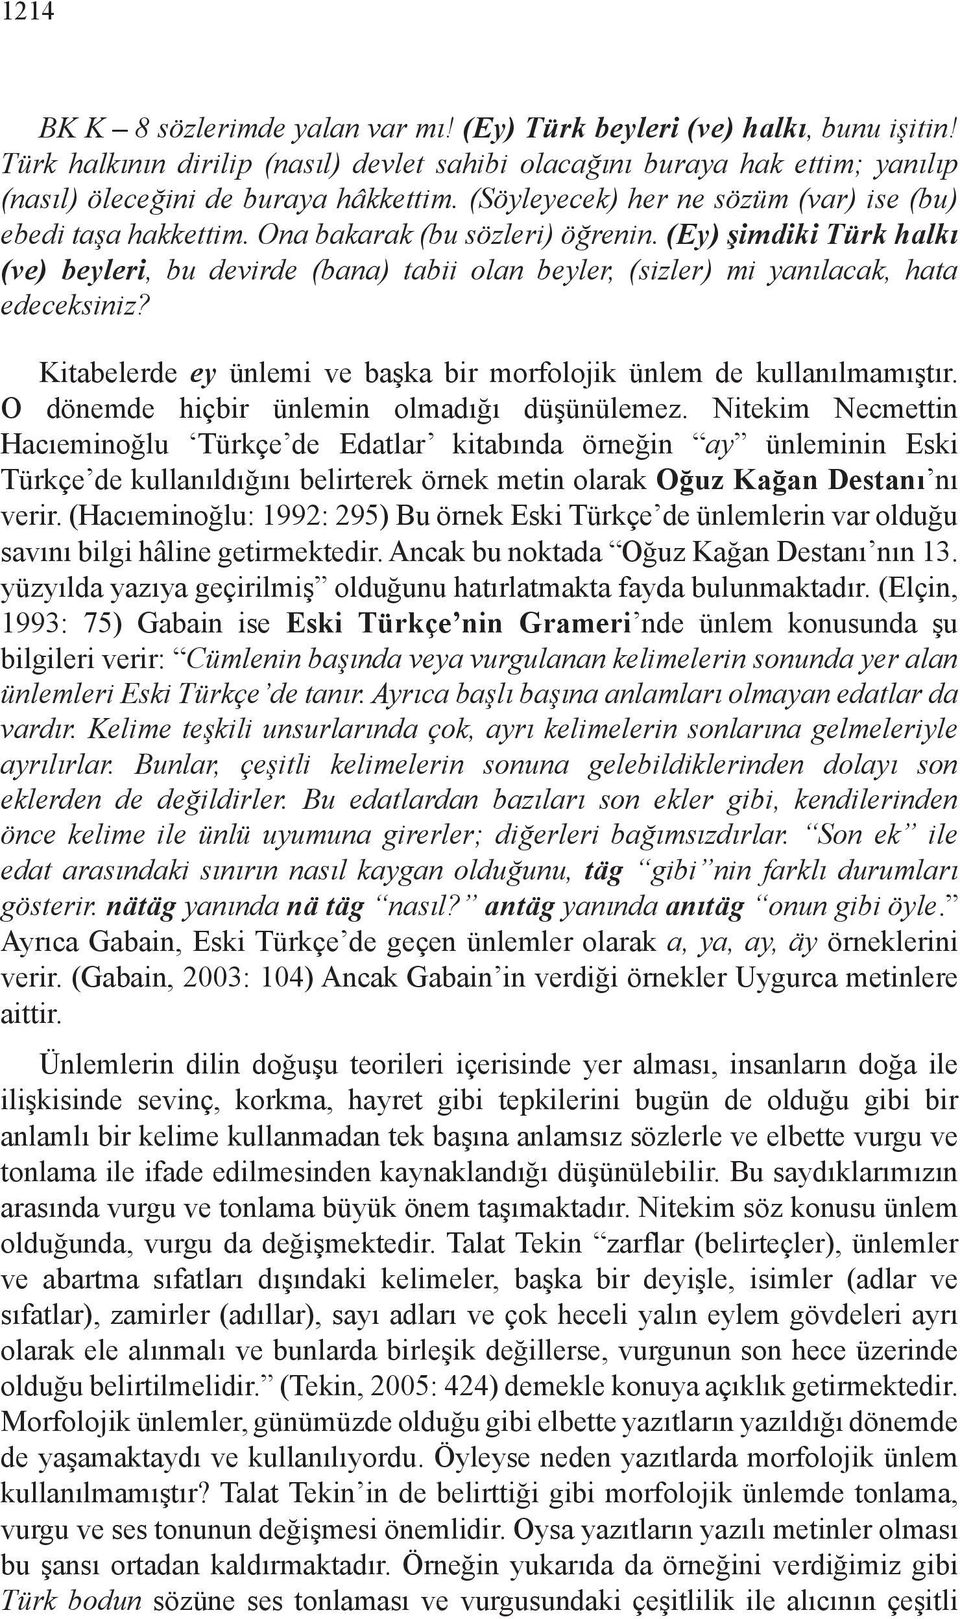 (Ey) şimdiki Türk halkı (ve) beyleri, bu devirde (bana) tabii olan beyler, (sizler) mi yanılacak, hata edeceksiniz? Kitabelerde ey ünlemi ve başka bir morfolojik ünlem de kullanılmamıştır.